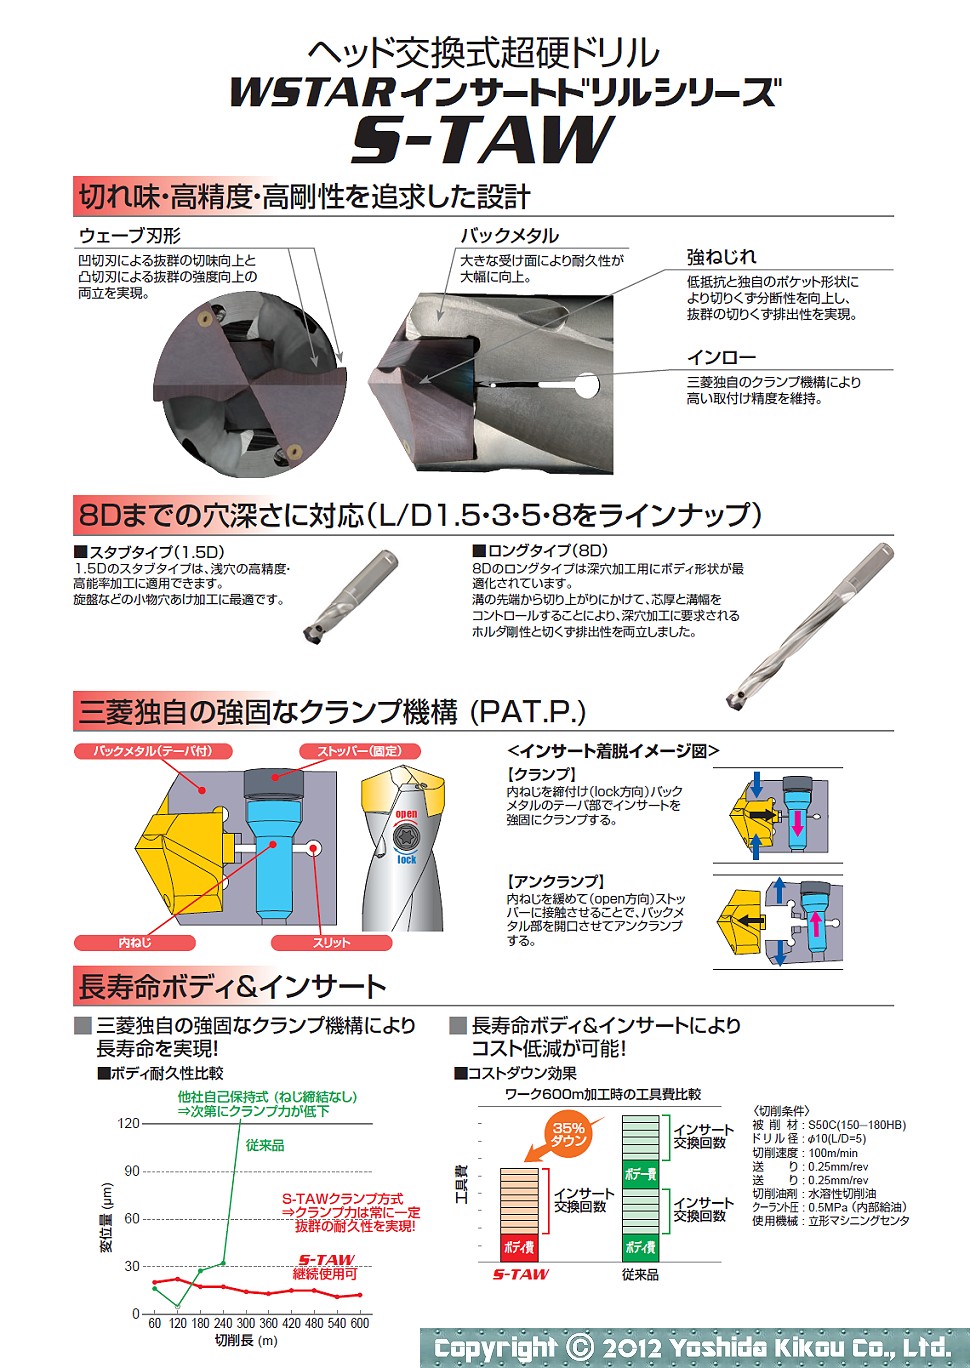 吉田機工株式会社 Yoshida Kikou Co.,Ltd.  ヘッド交換式超硬ドリル「WSTARインサートドリルシリーズ S-TAW」